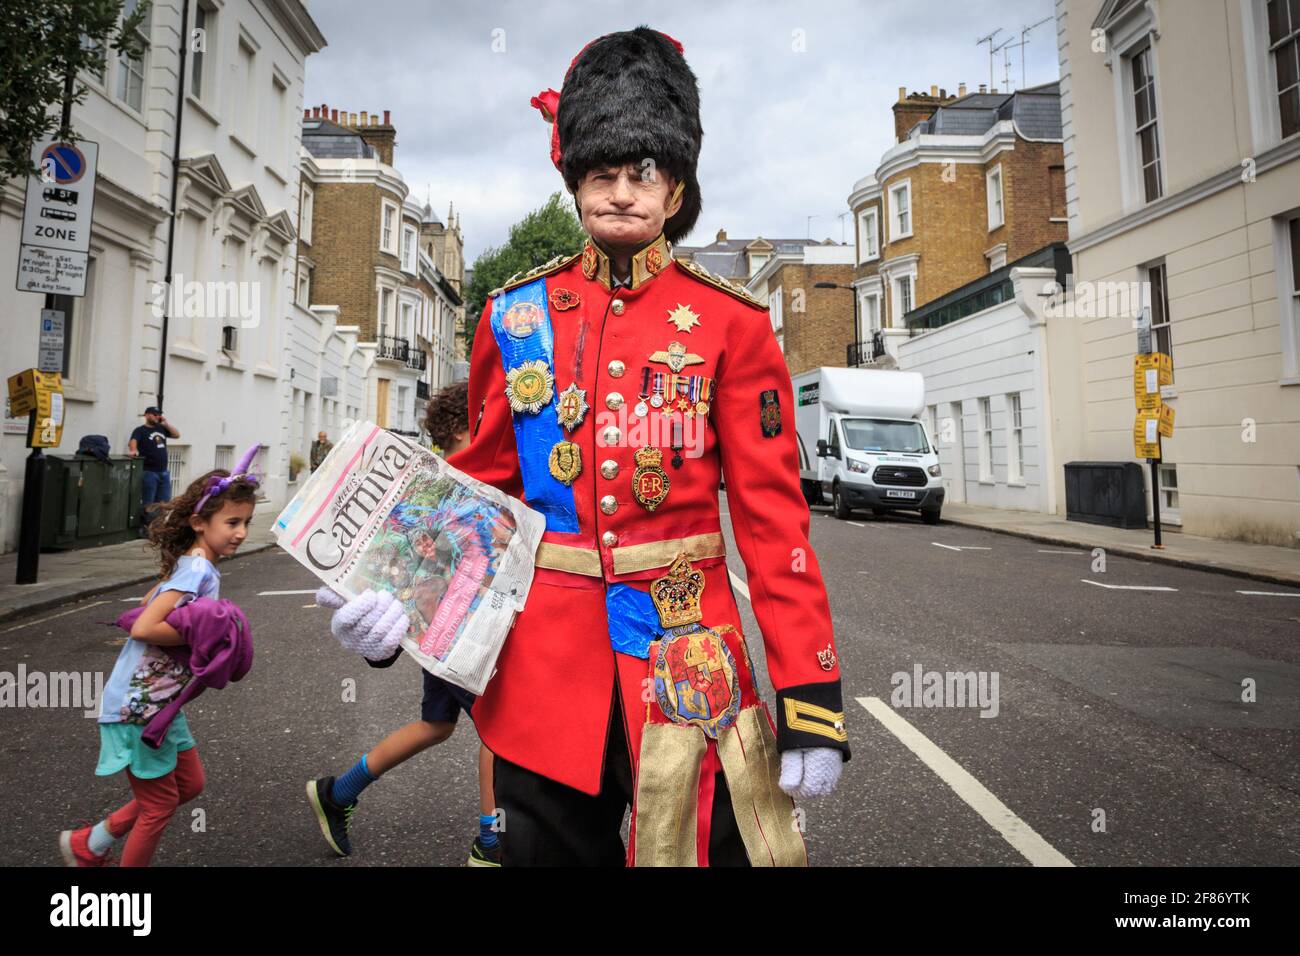 Un homme en costume militaire britannique ressemble à celui de la garde de la reine britannique avec un chapeau en peau d'ours, Notting Hill Carnival, Londres, Royaume-Uni Banque D'Images